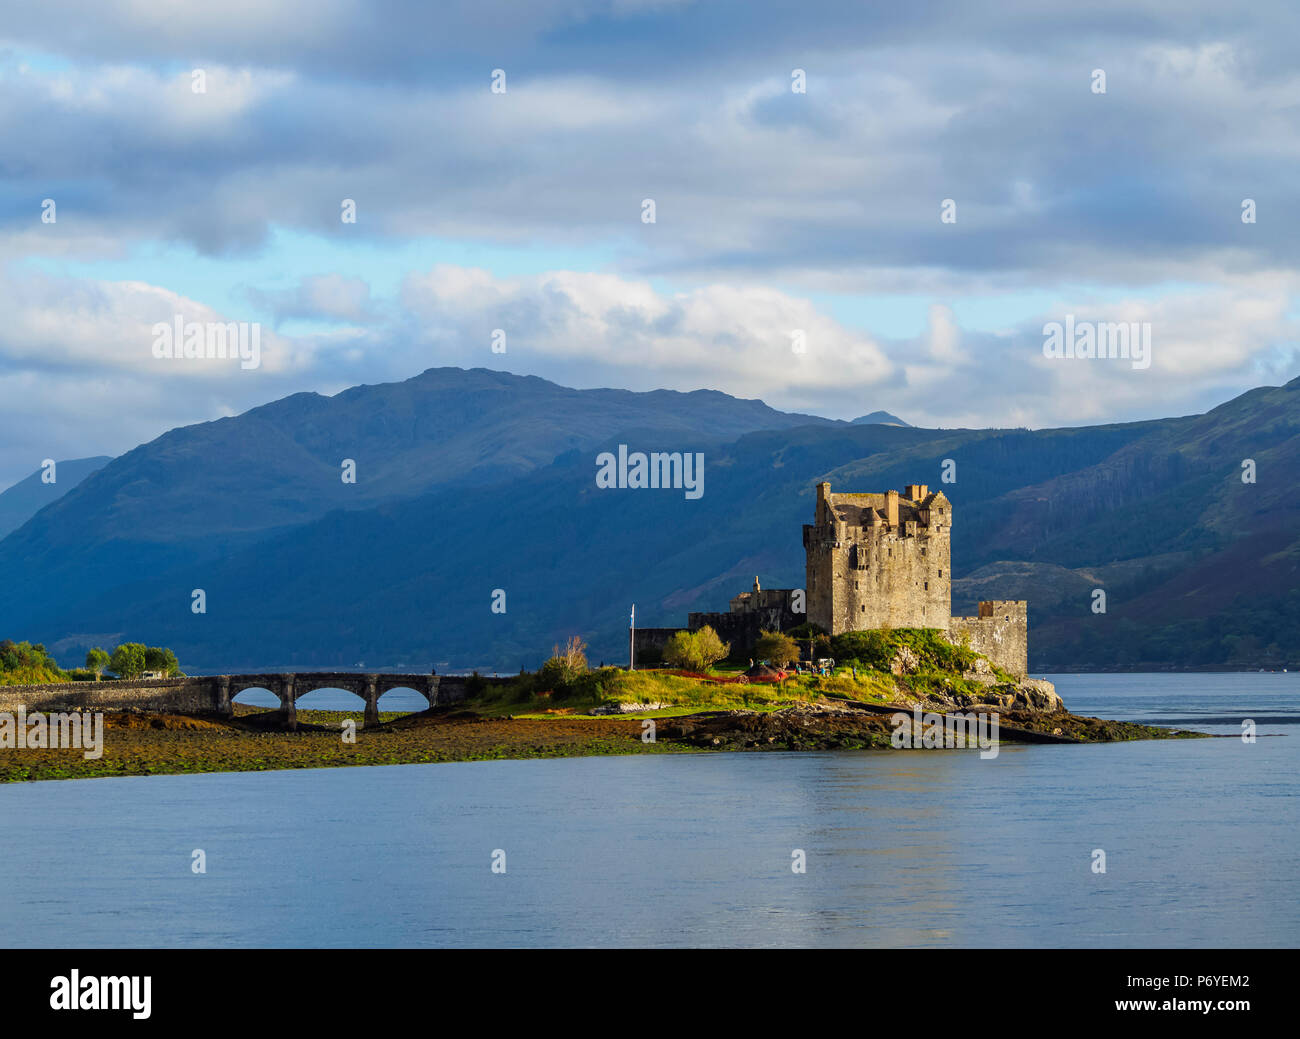 Royaume-uni, Ecosse, Highlands, Dornie, vue sur le château d'Eilean Donan. Banque D'Images